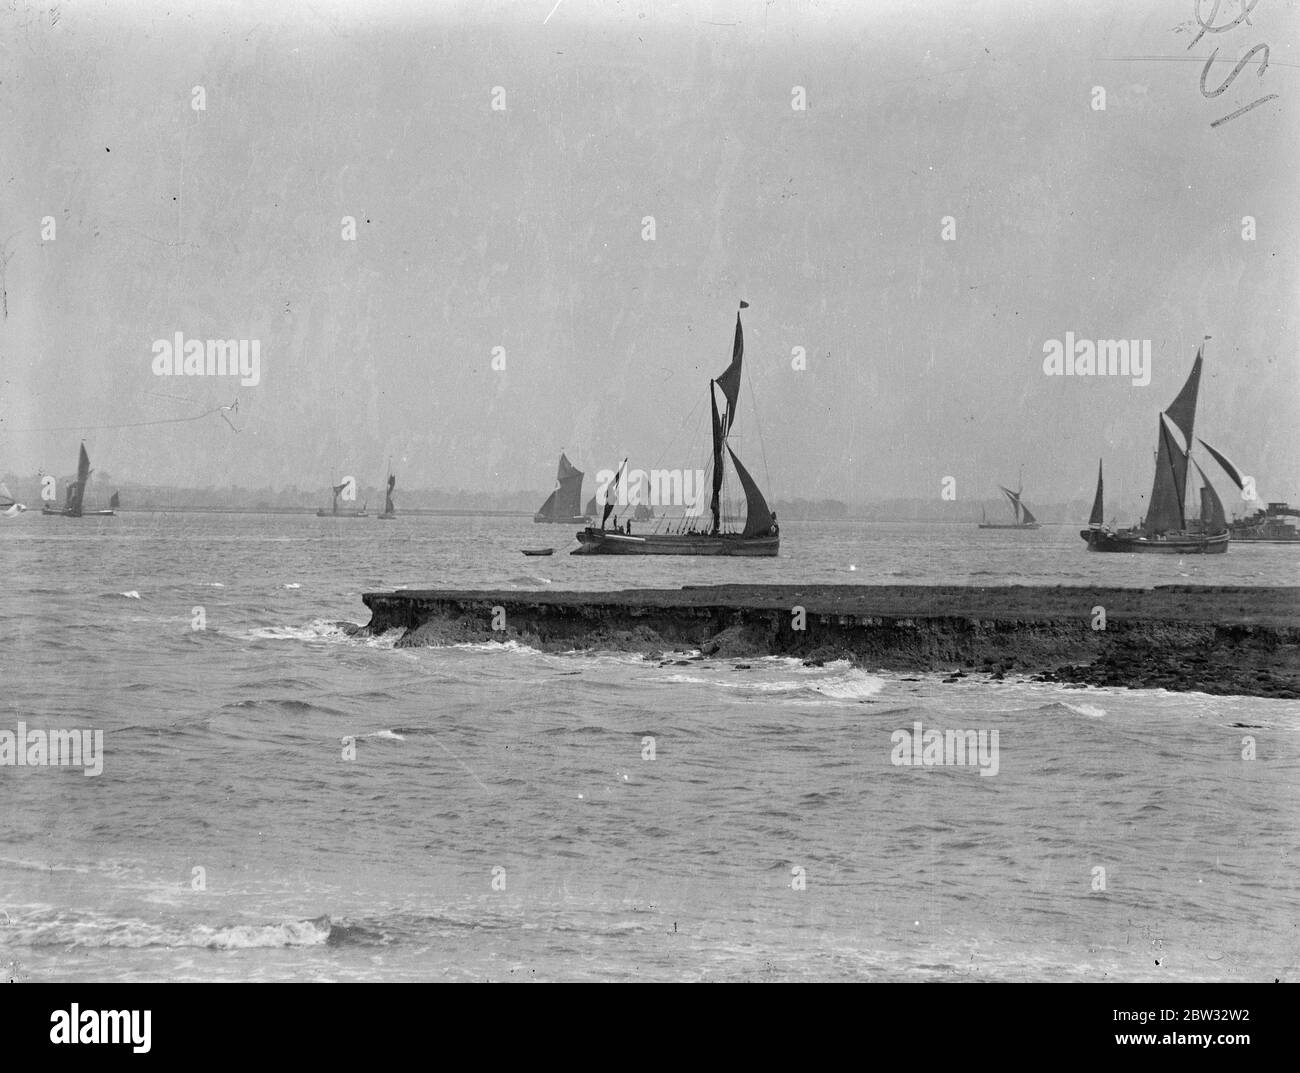 Segelkähne Rennen die Themse hinunter. Segelschiffe auf der Themse verwendet nahm an der jährlichen Rennen aus der unteren Hoffnung erreichen, den Fluss hinunter. Die Segelkähne manövrieren für Position zu Beginn des Rennens von Lower Hope Reach , Gravesend . 28 Juni 1932 Stockfoto